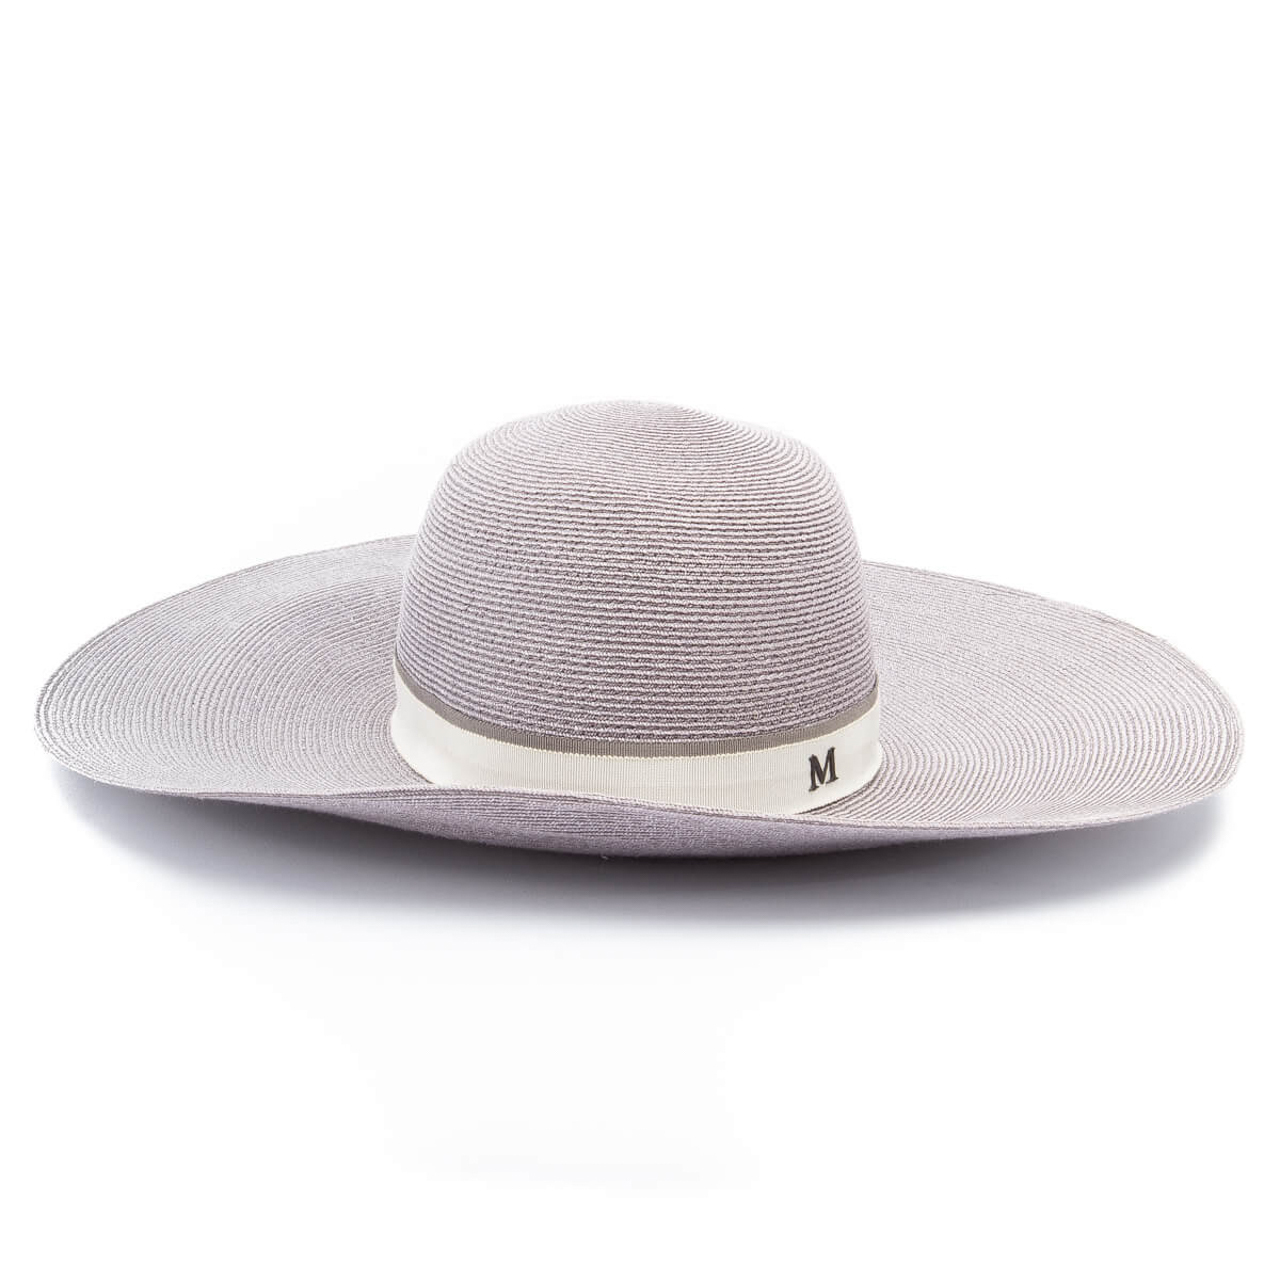 Louis Vuitton - Authenticated Hat - Cotton Multicolour Plain for Women, Very Good Condition